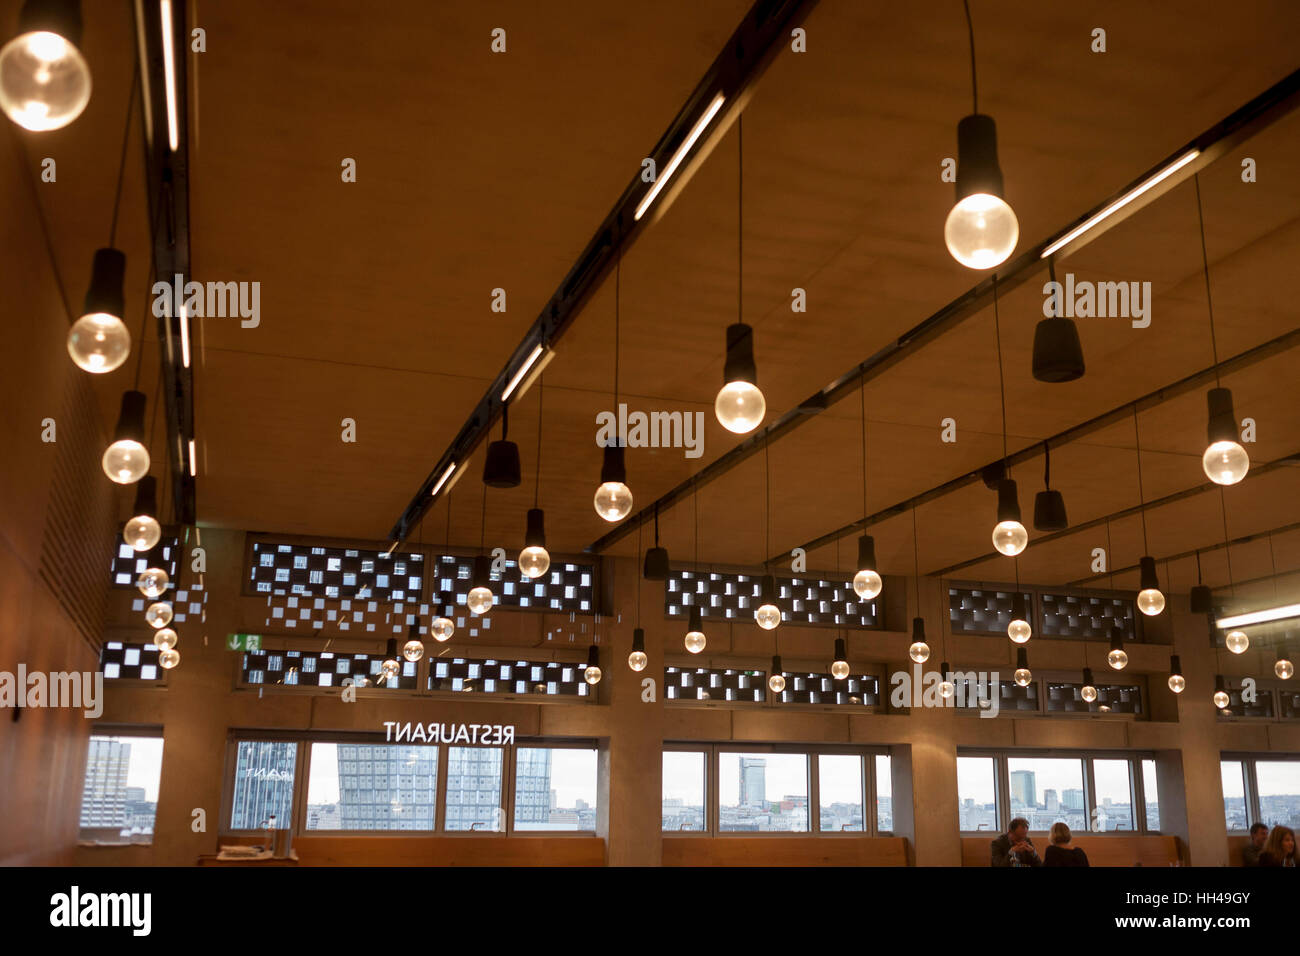 Deckengestaltung Im Restaurant In Kunstgalerie Tate Modern